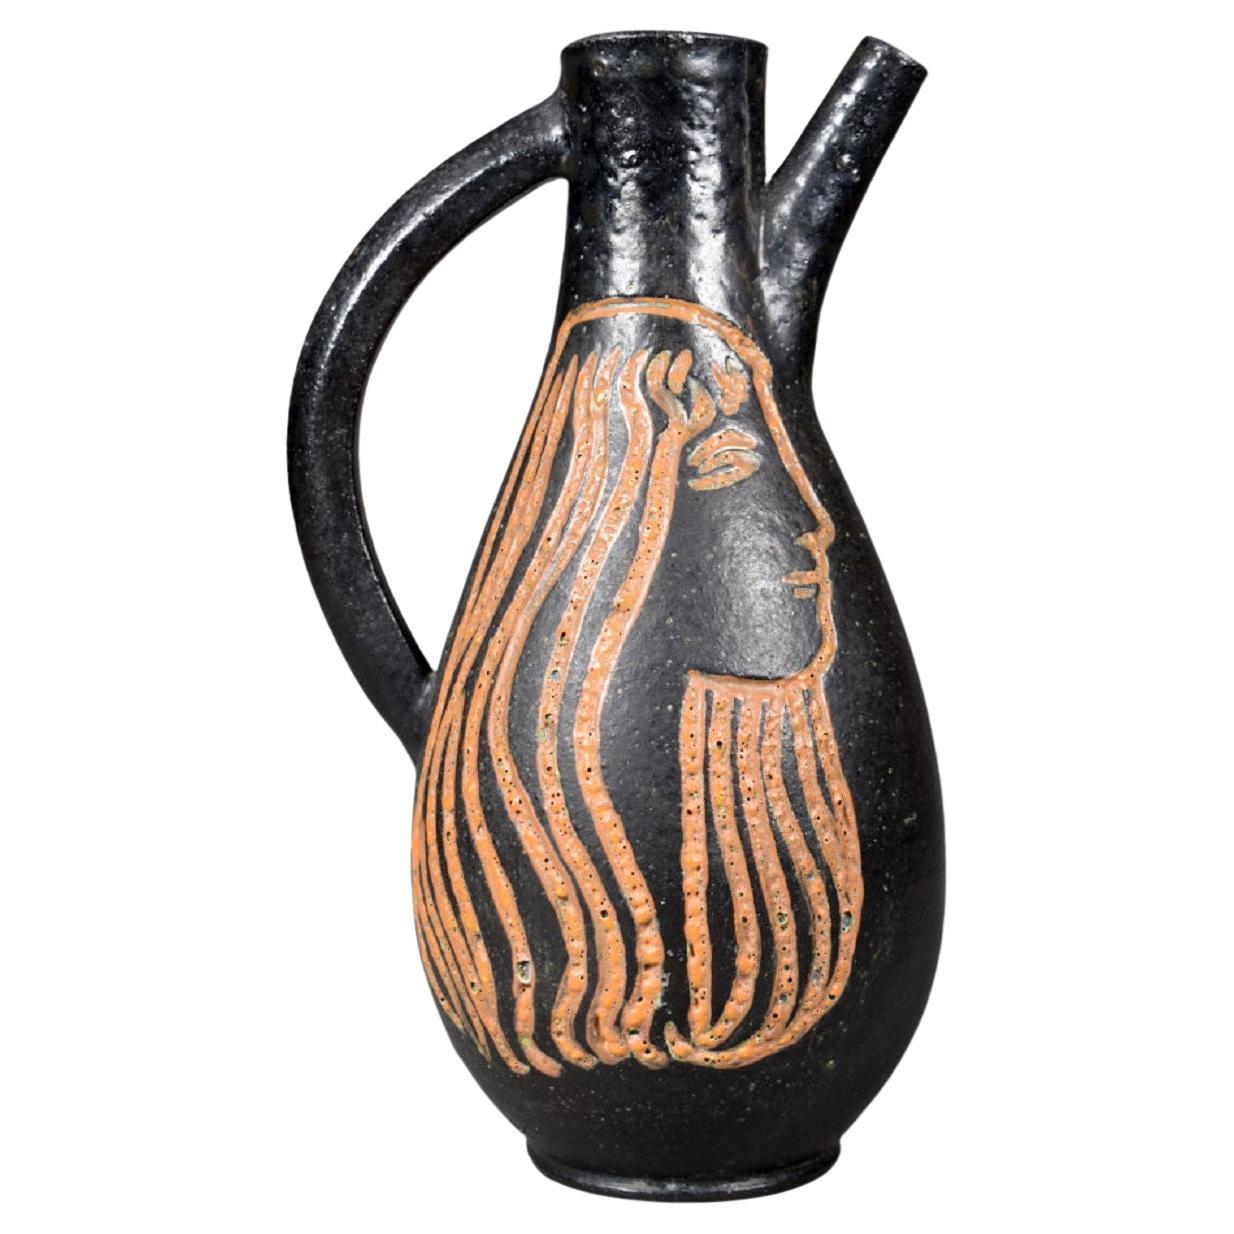 Accolay, Ceramic Vase circa 1960